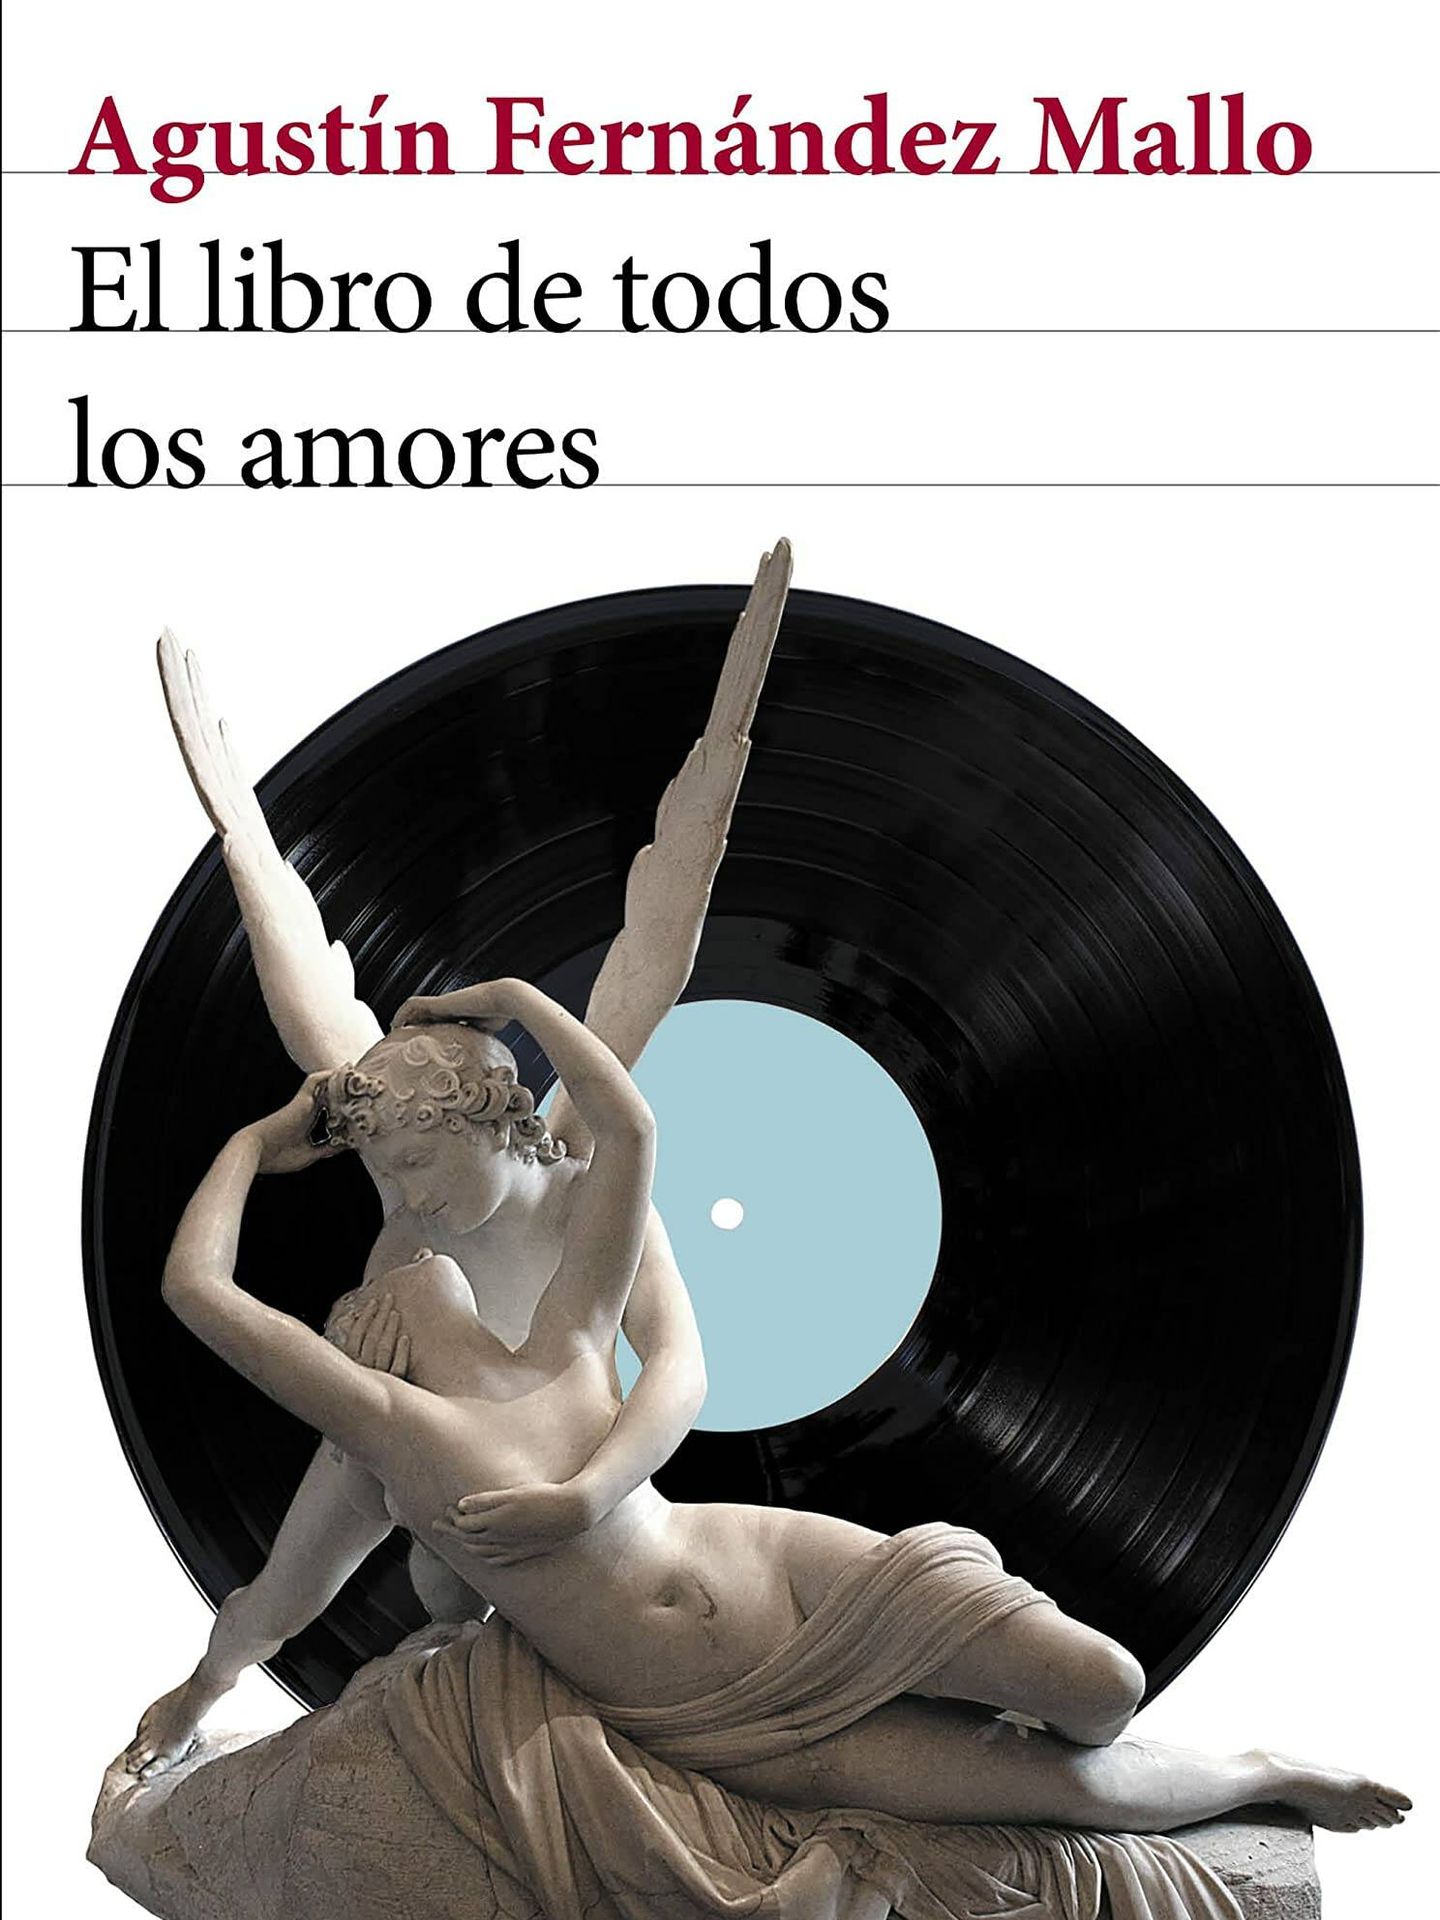 'El libro de todos los amores'.